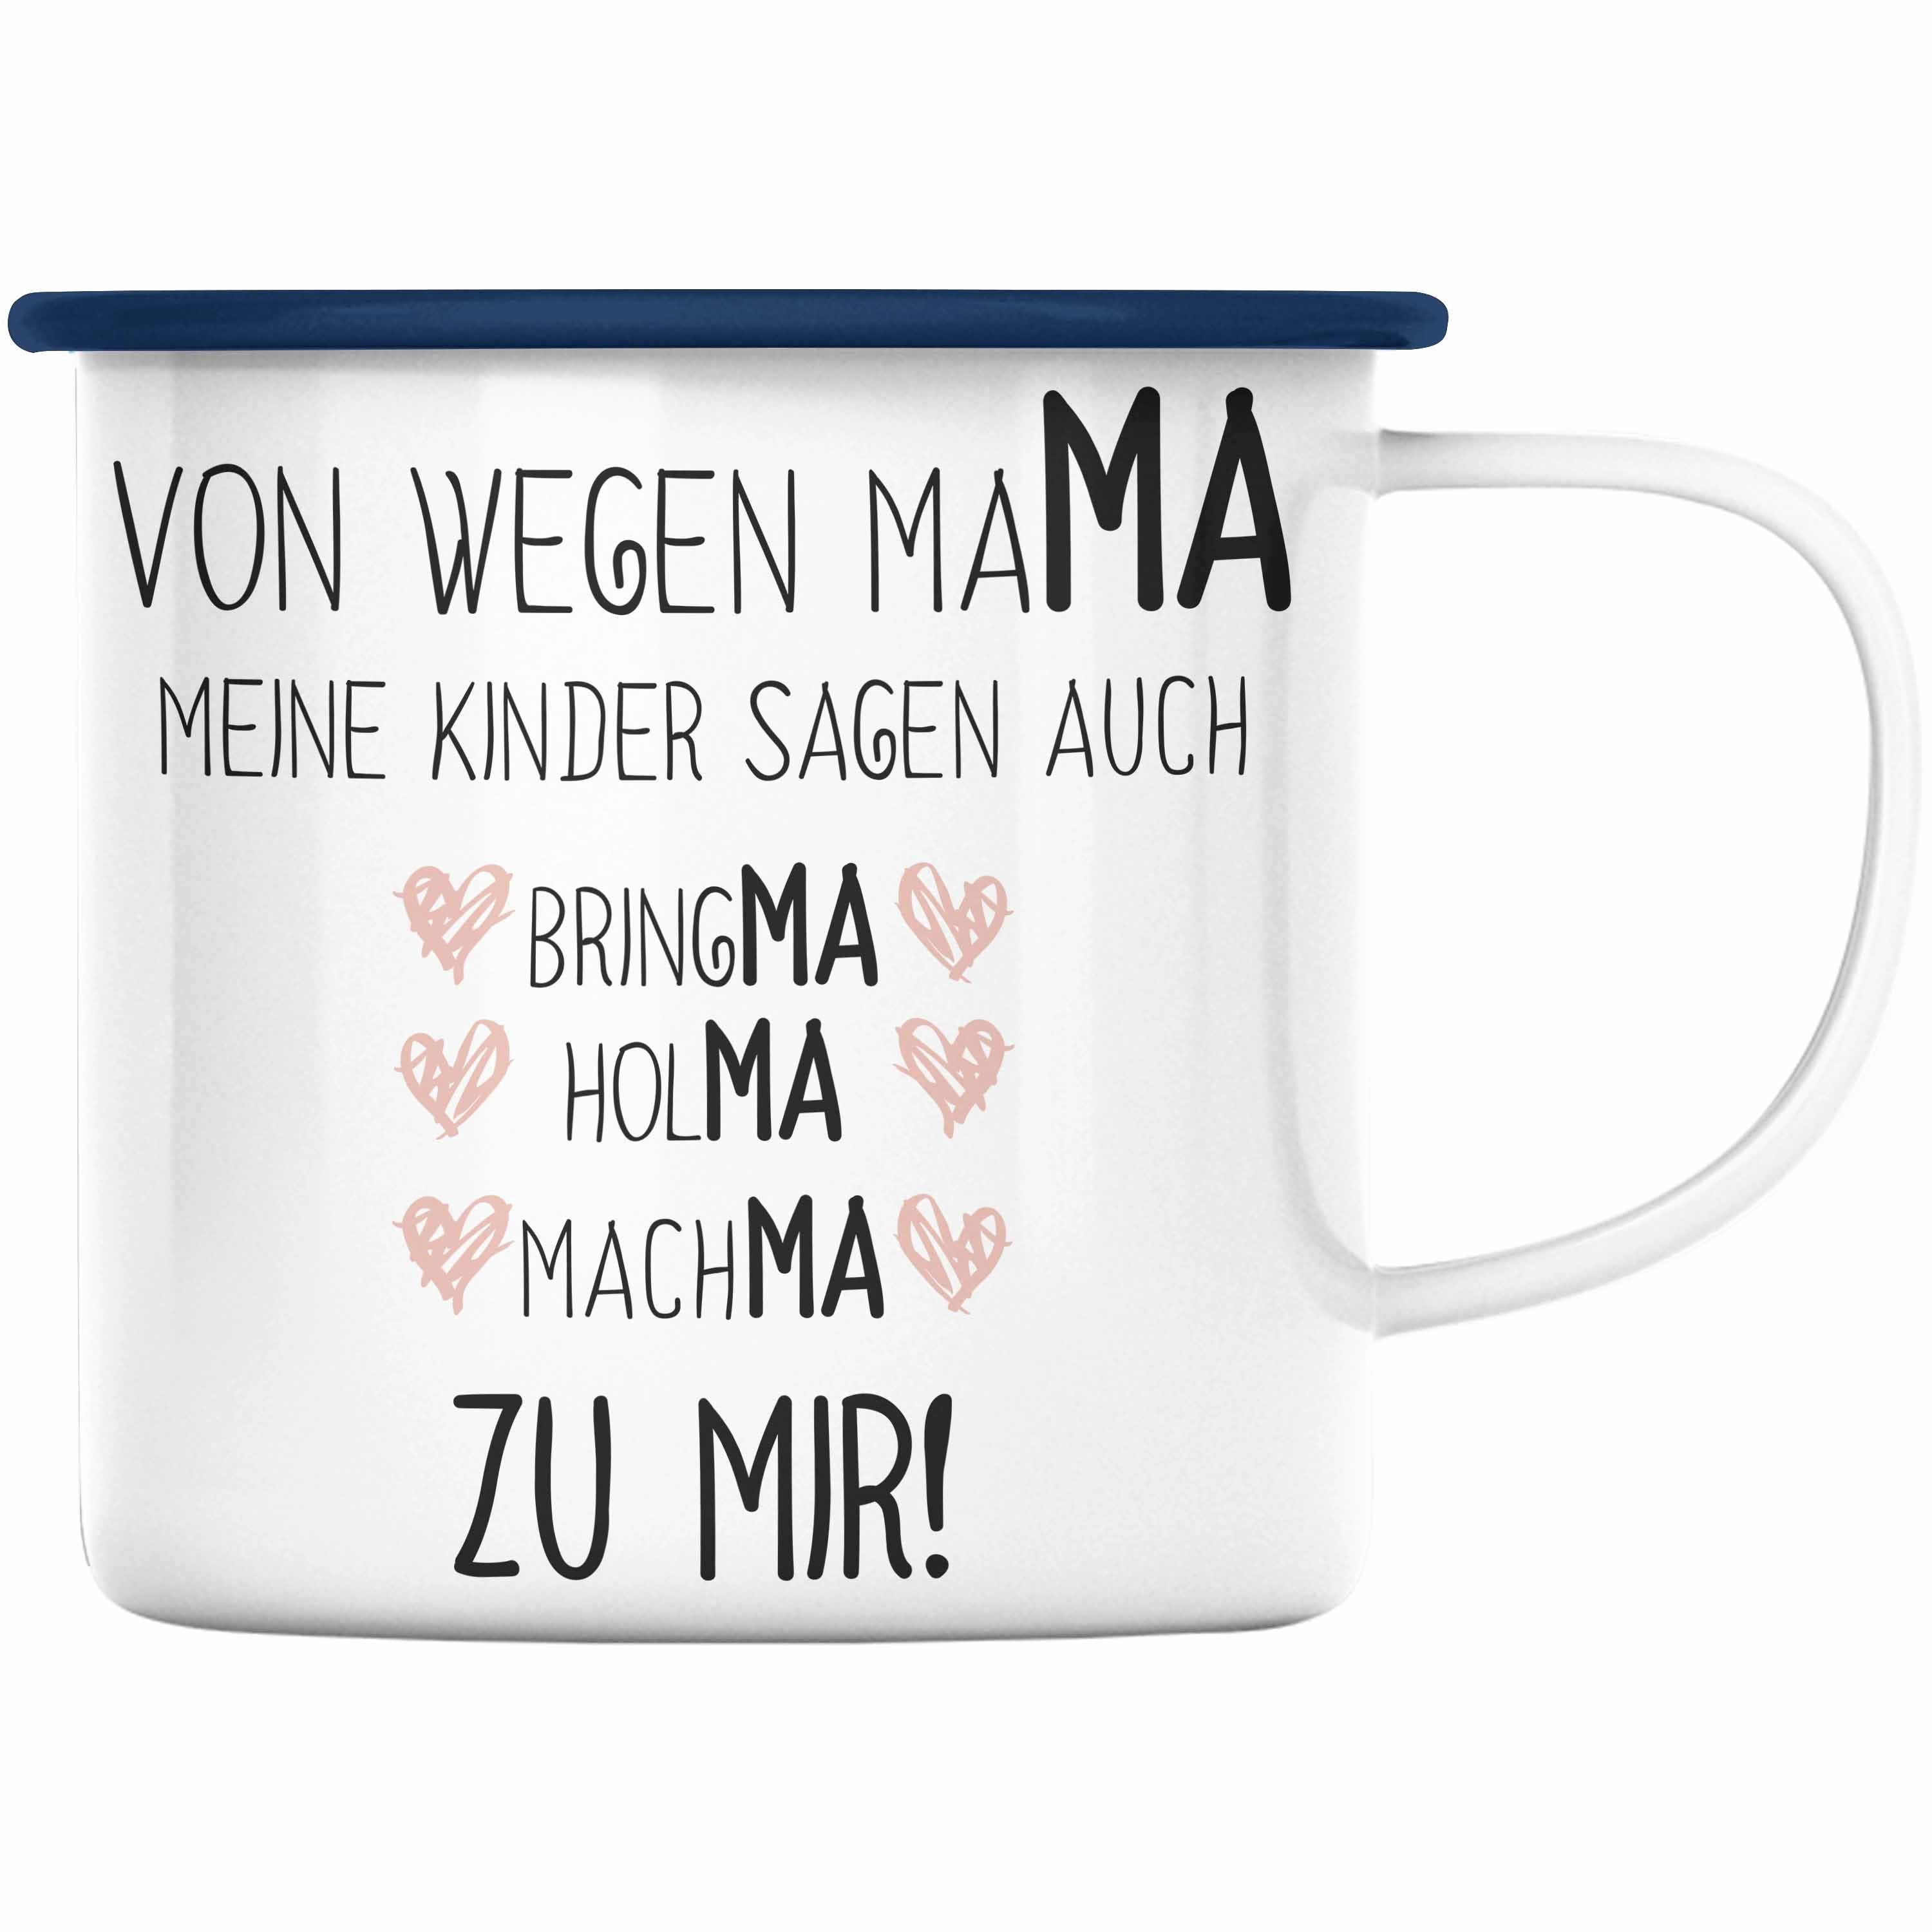 Trendation Thermotasse Trendation - Mama Emaille Tasse mit Spruch Geschenk Muttertag von Tochter Sohn Mutter KaffeeEmaille Tasse Blau